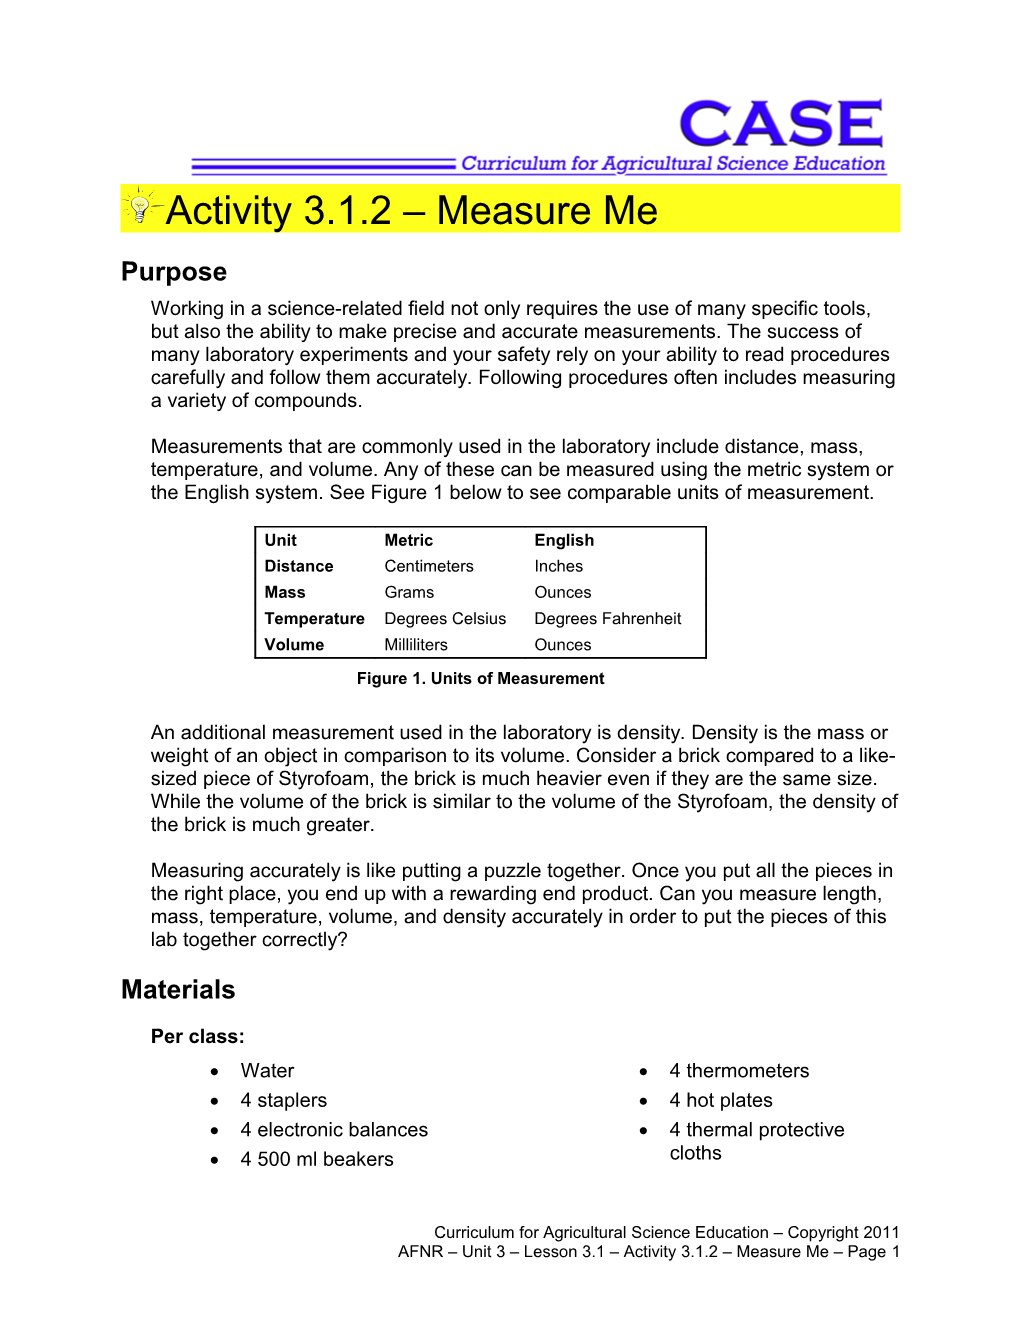 Activity 3.1.2 Measure Me